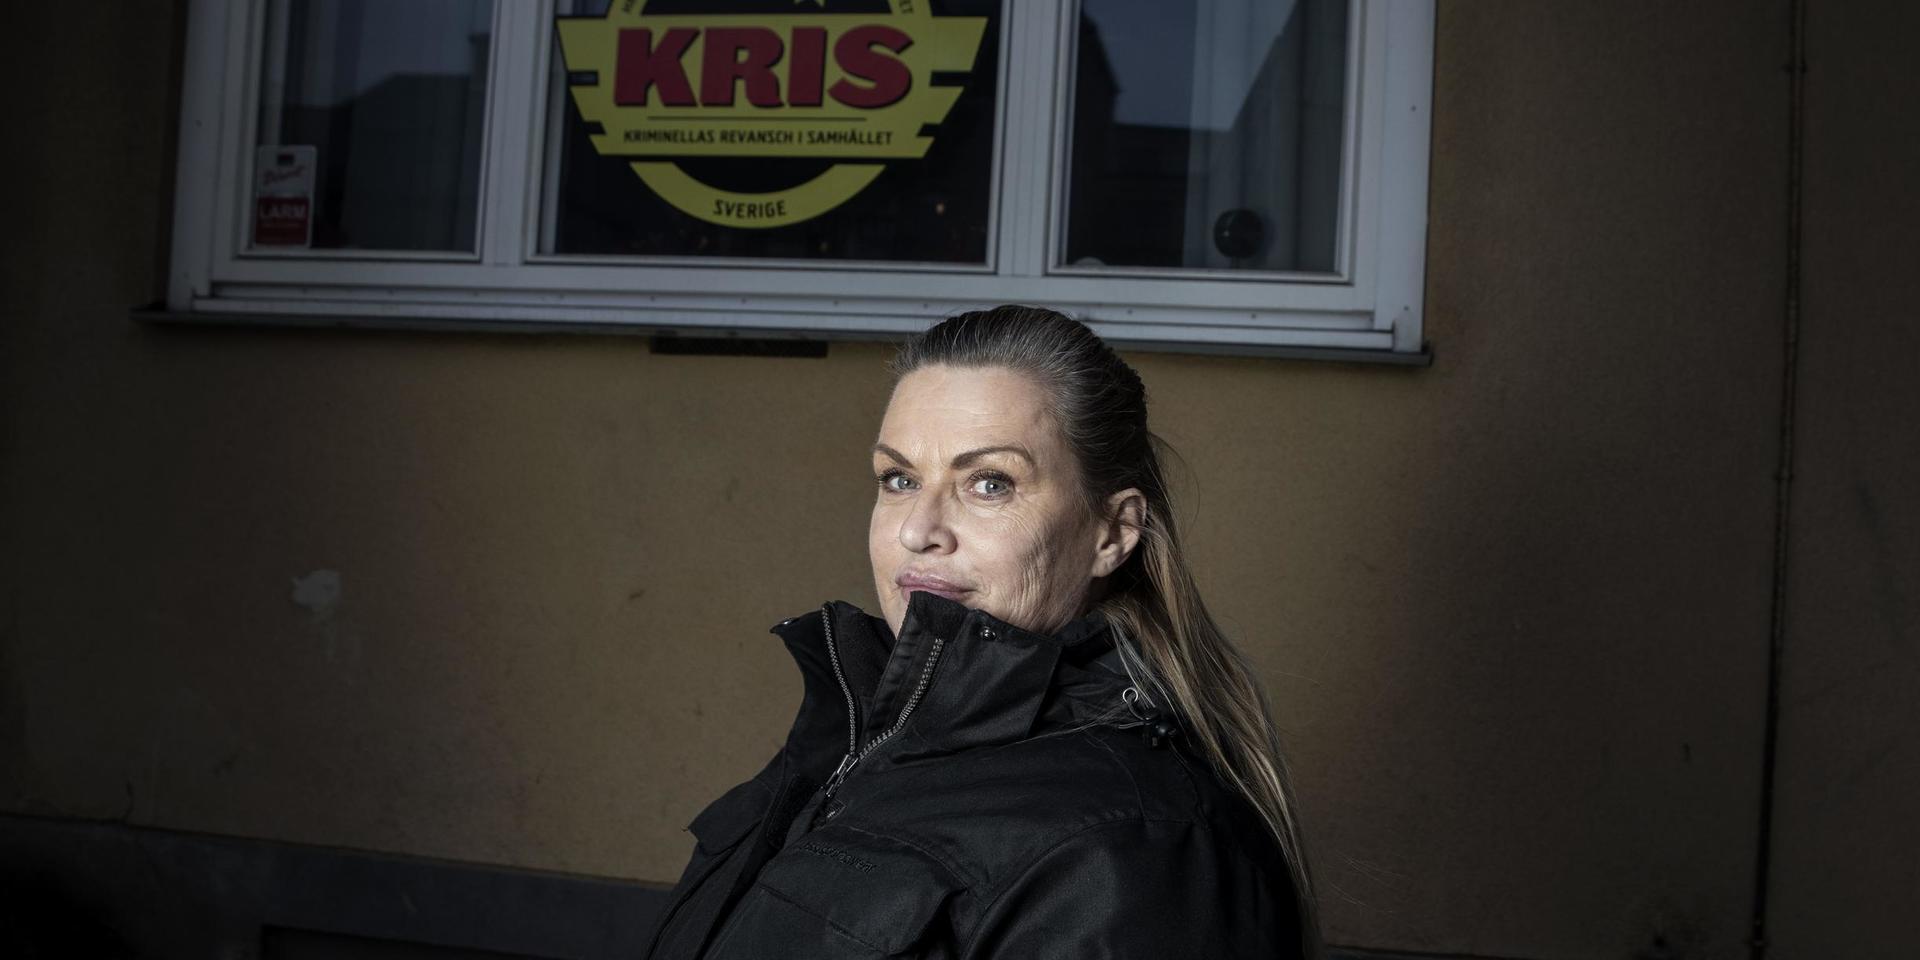 Lizylotte Hréhorczuk har varit kassör hos Kris. Kriminellas revansch i samhället och nu jobbar hon på ett behandlingshem.